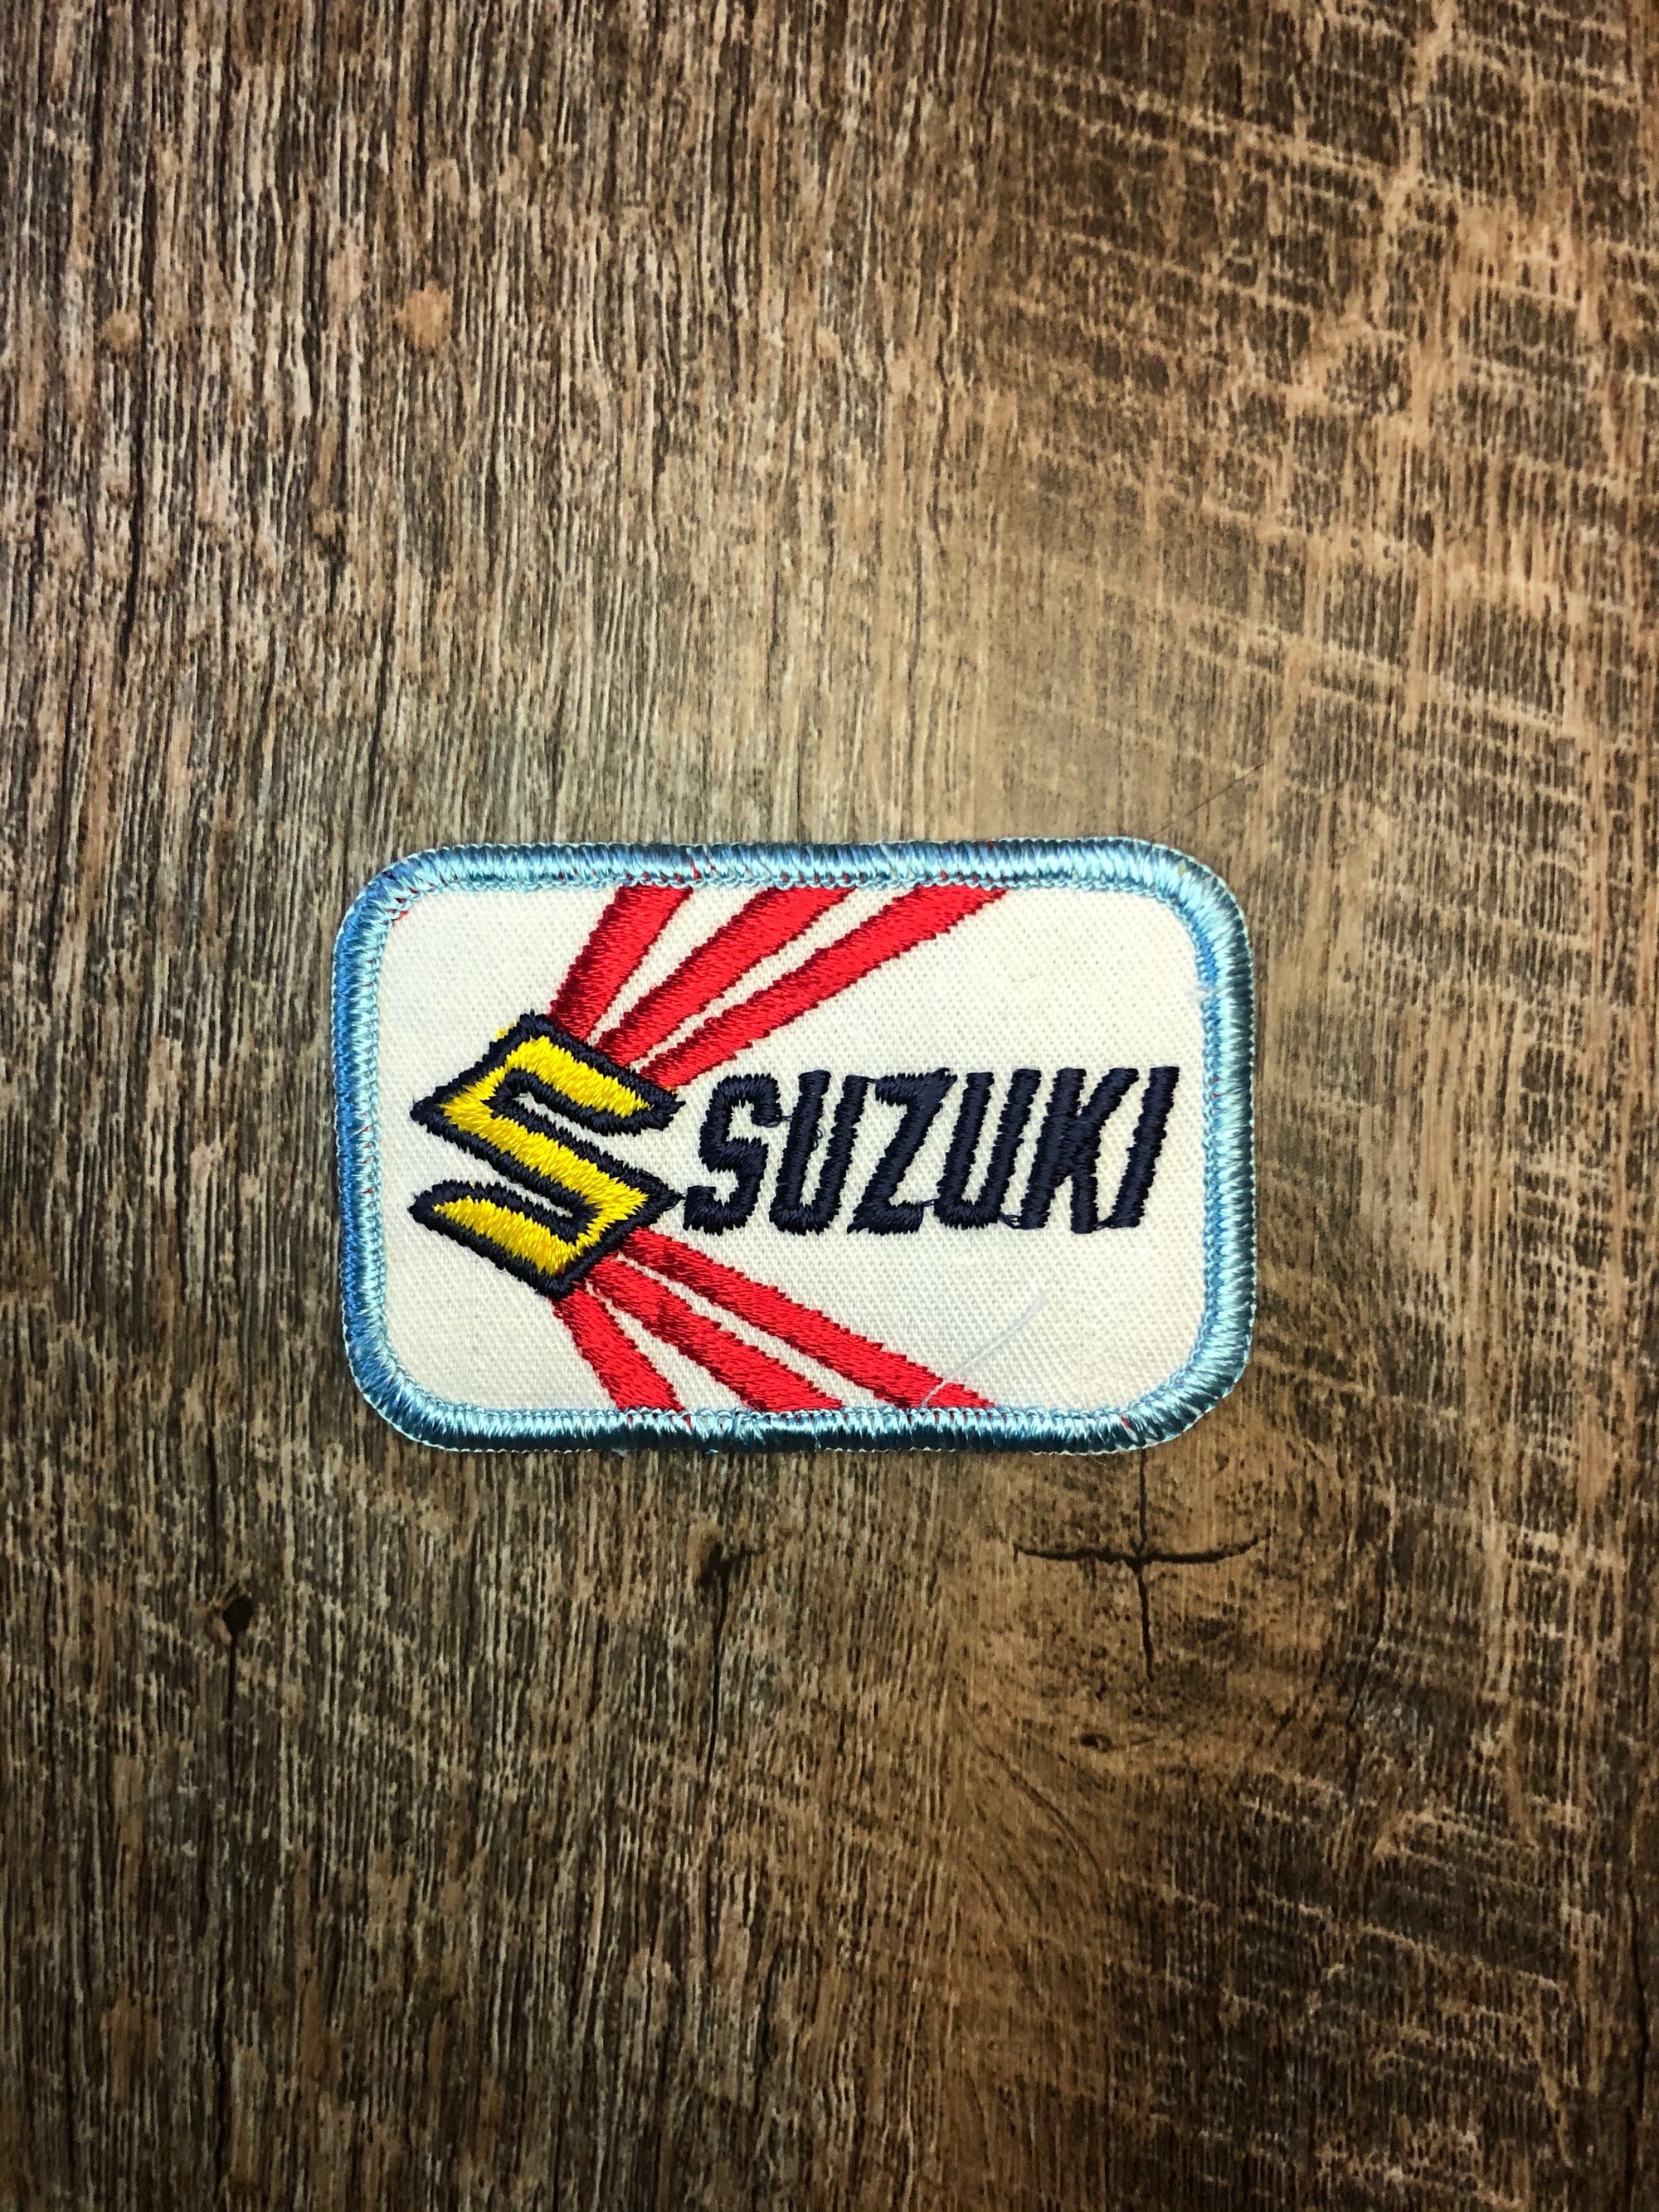 Vintage Suzuki